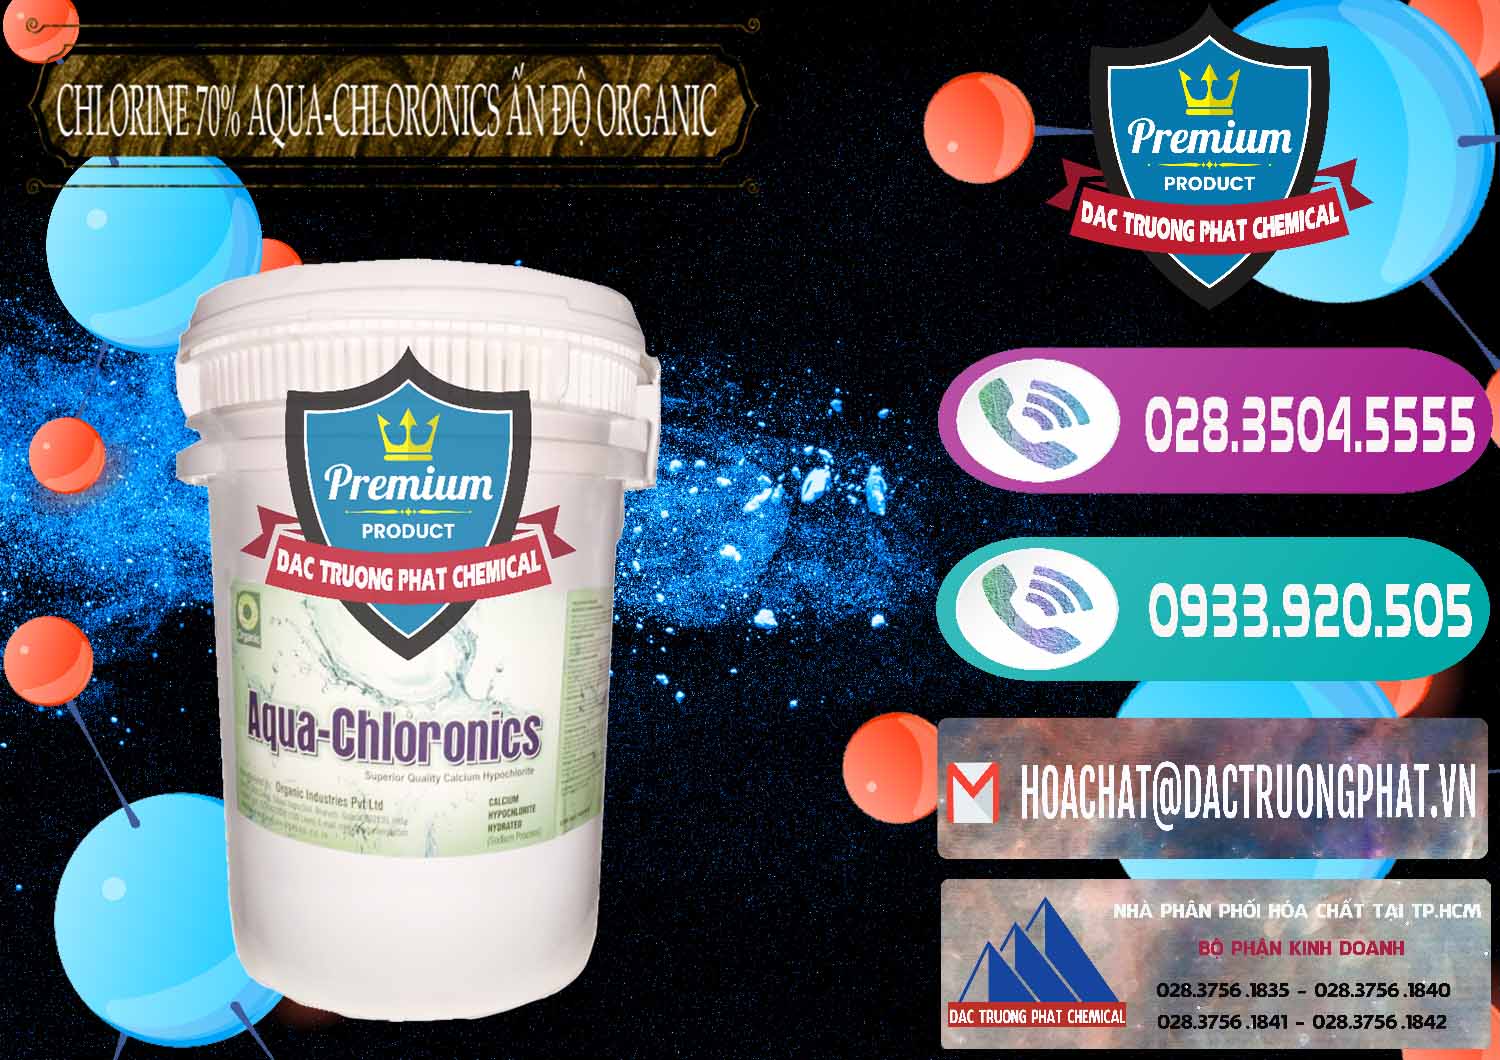 Cty chuyên phân phối ( bán ) Chlorine – Clorin 70% Aqua-Chloronics Ấn Độ Organic India - 0211 - Cty phân phối ( nhập khẩu ) hóa chất tại TP.HCM - hoachatxulynuoc.com